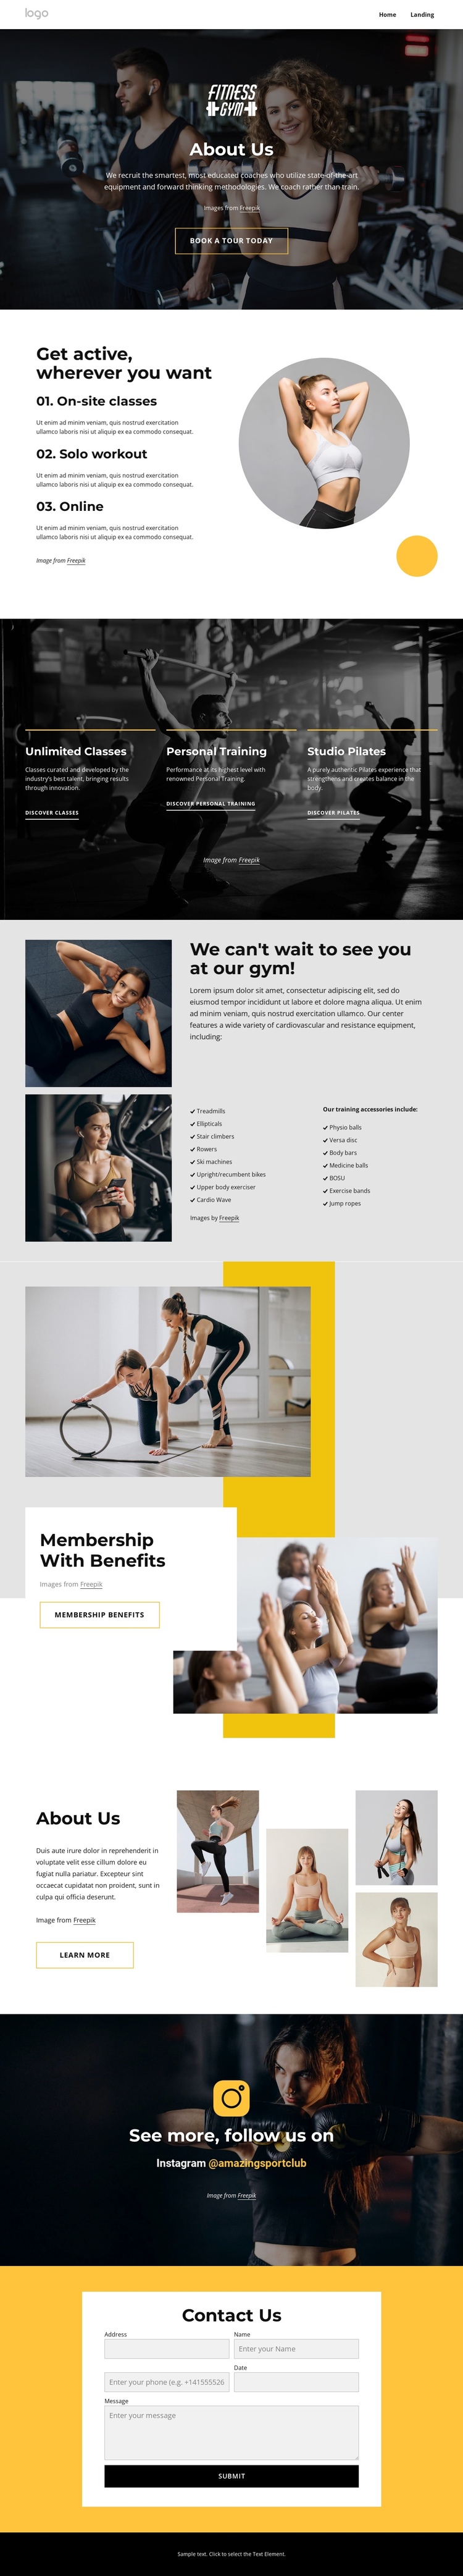 Sport and wellness center Website Builder Software